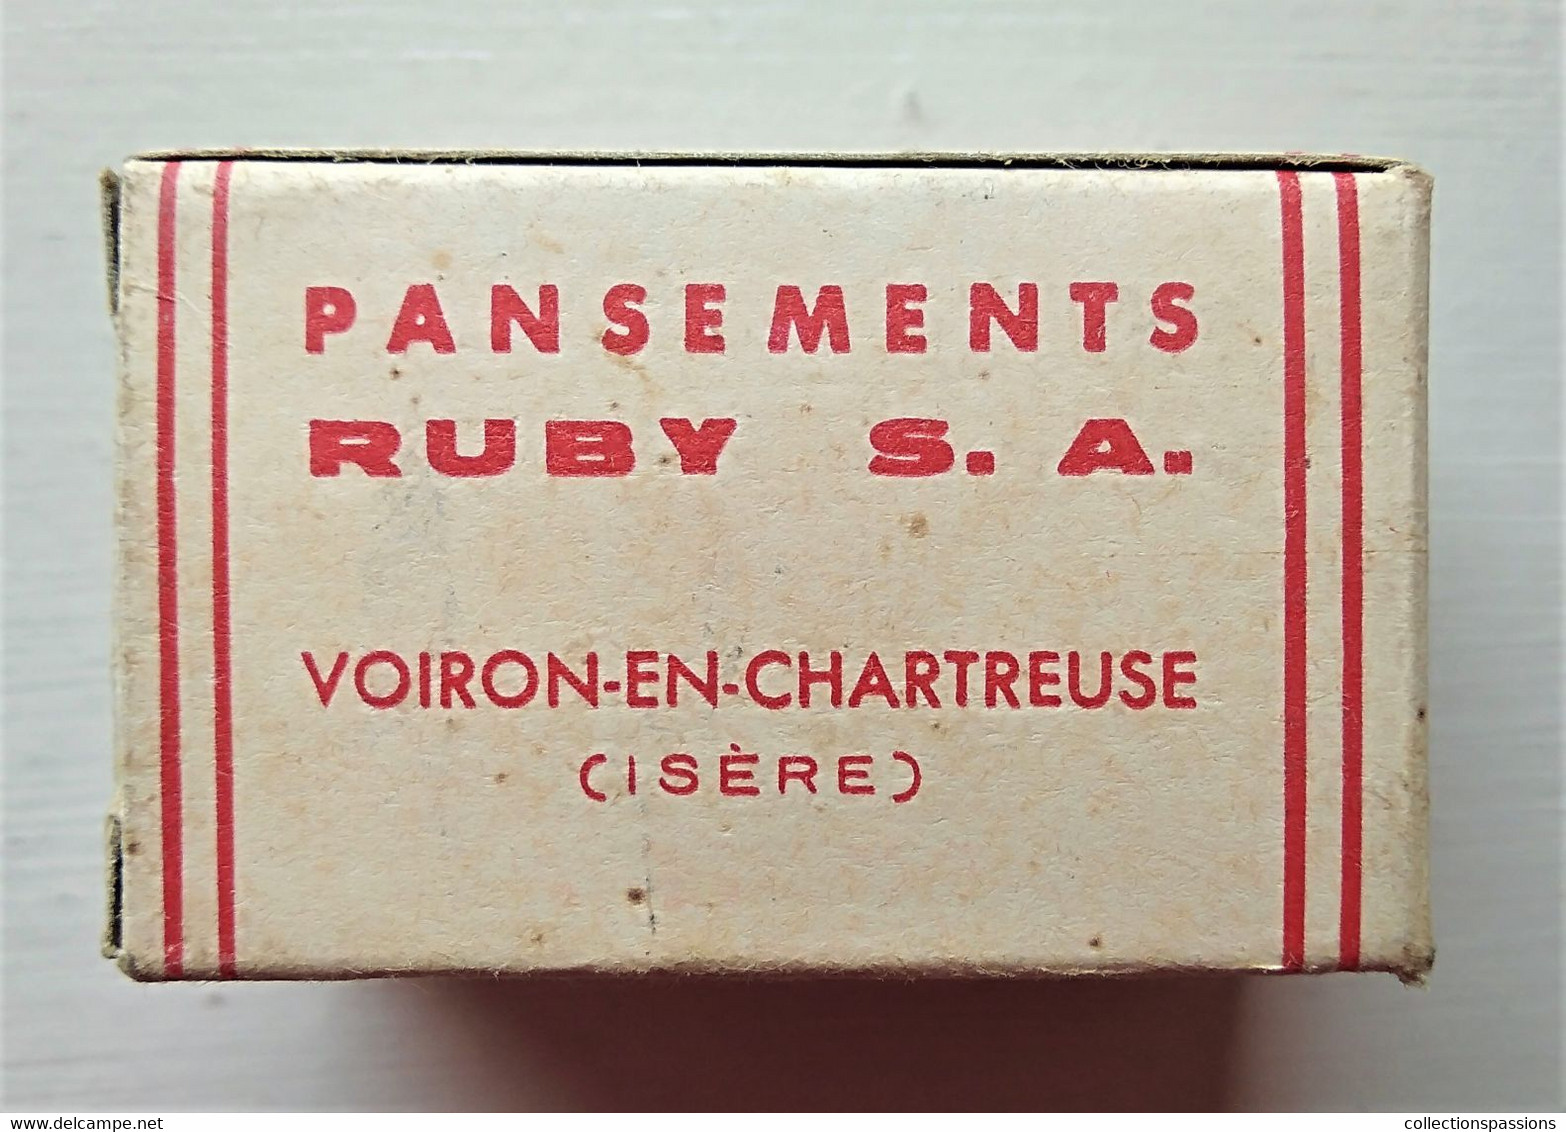 - Ancienne Boite En Carton - Bande De Gaze Hydrophile " RUBY S.A " - Objet De Collection - Pharmacie - - Matériel Médical & Dentaire